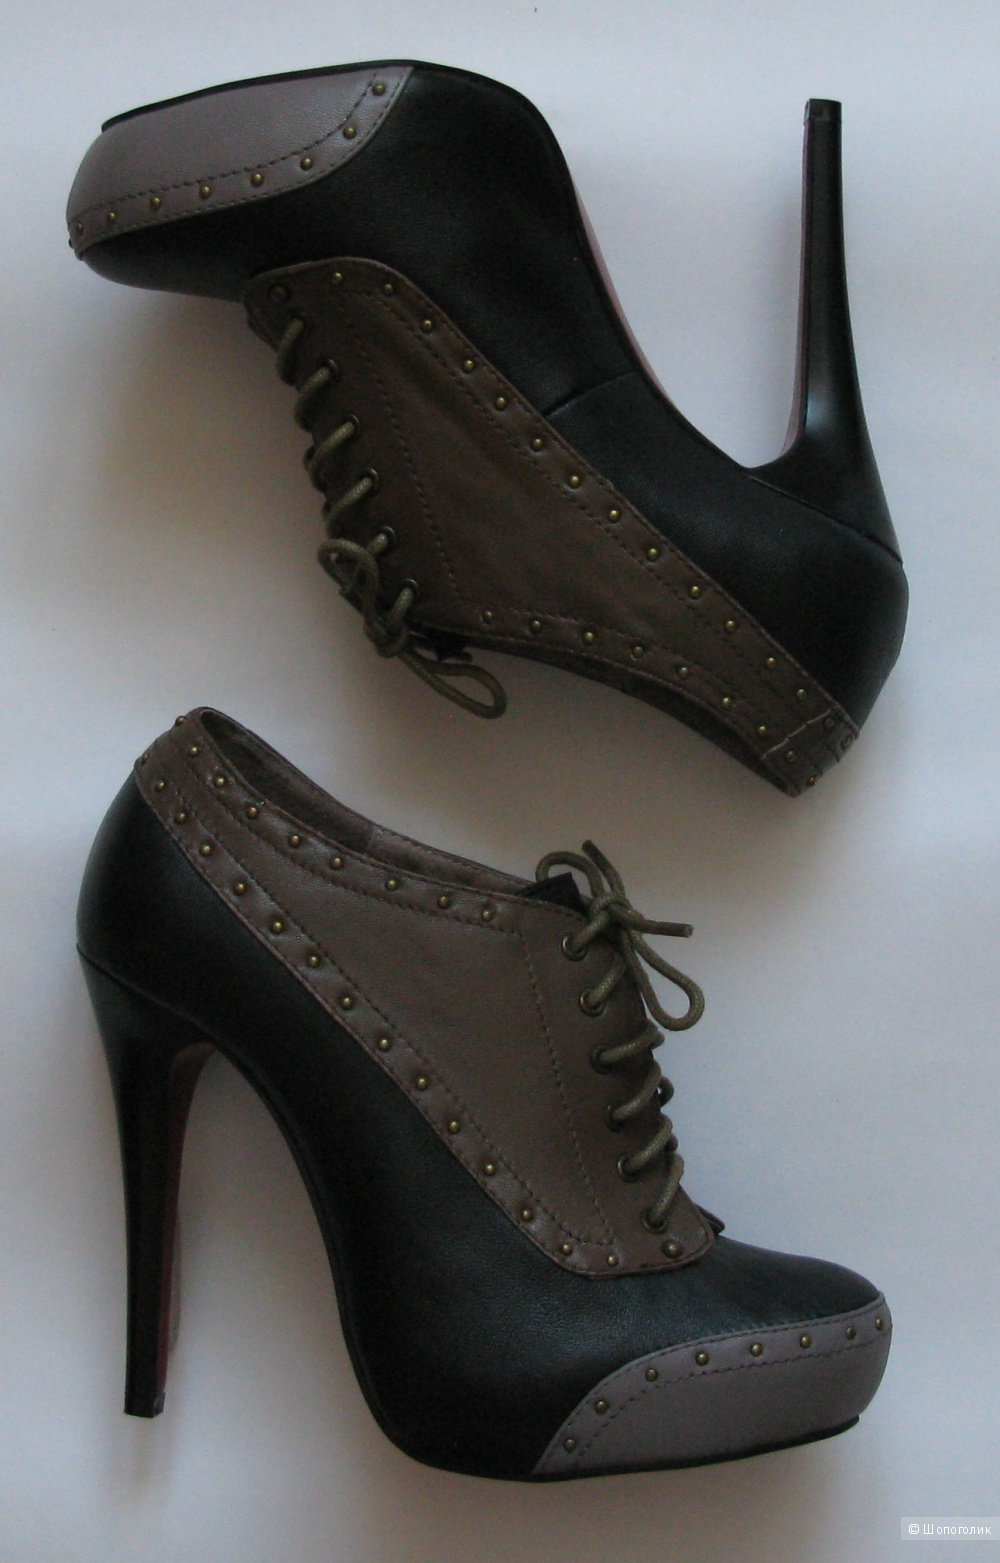 Туфли женские, бренд Winzor, размер 37